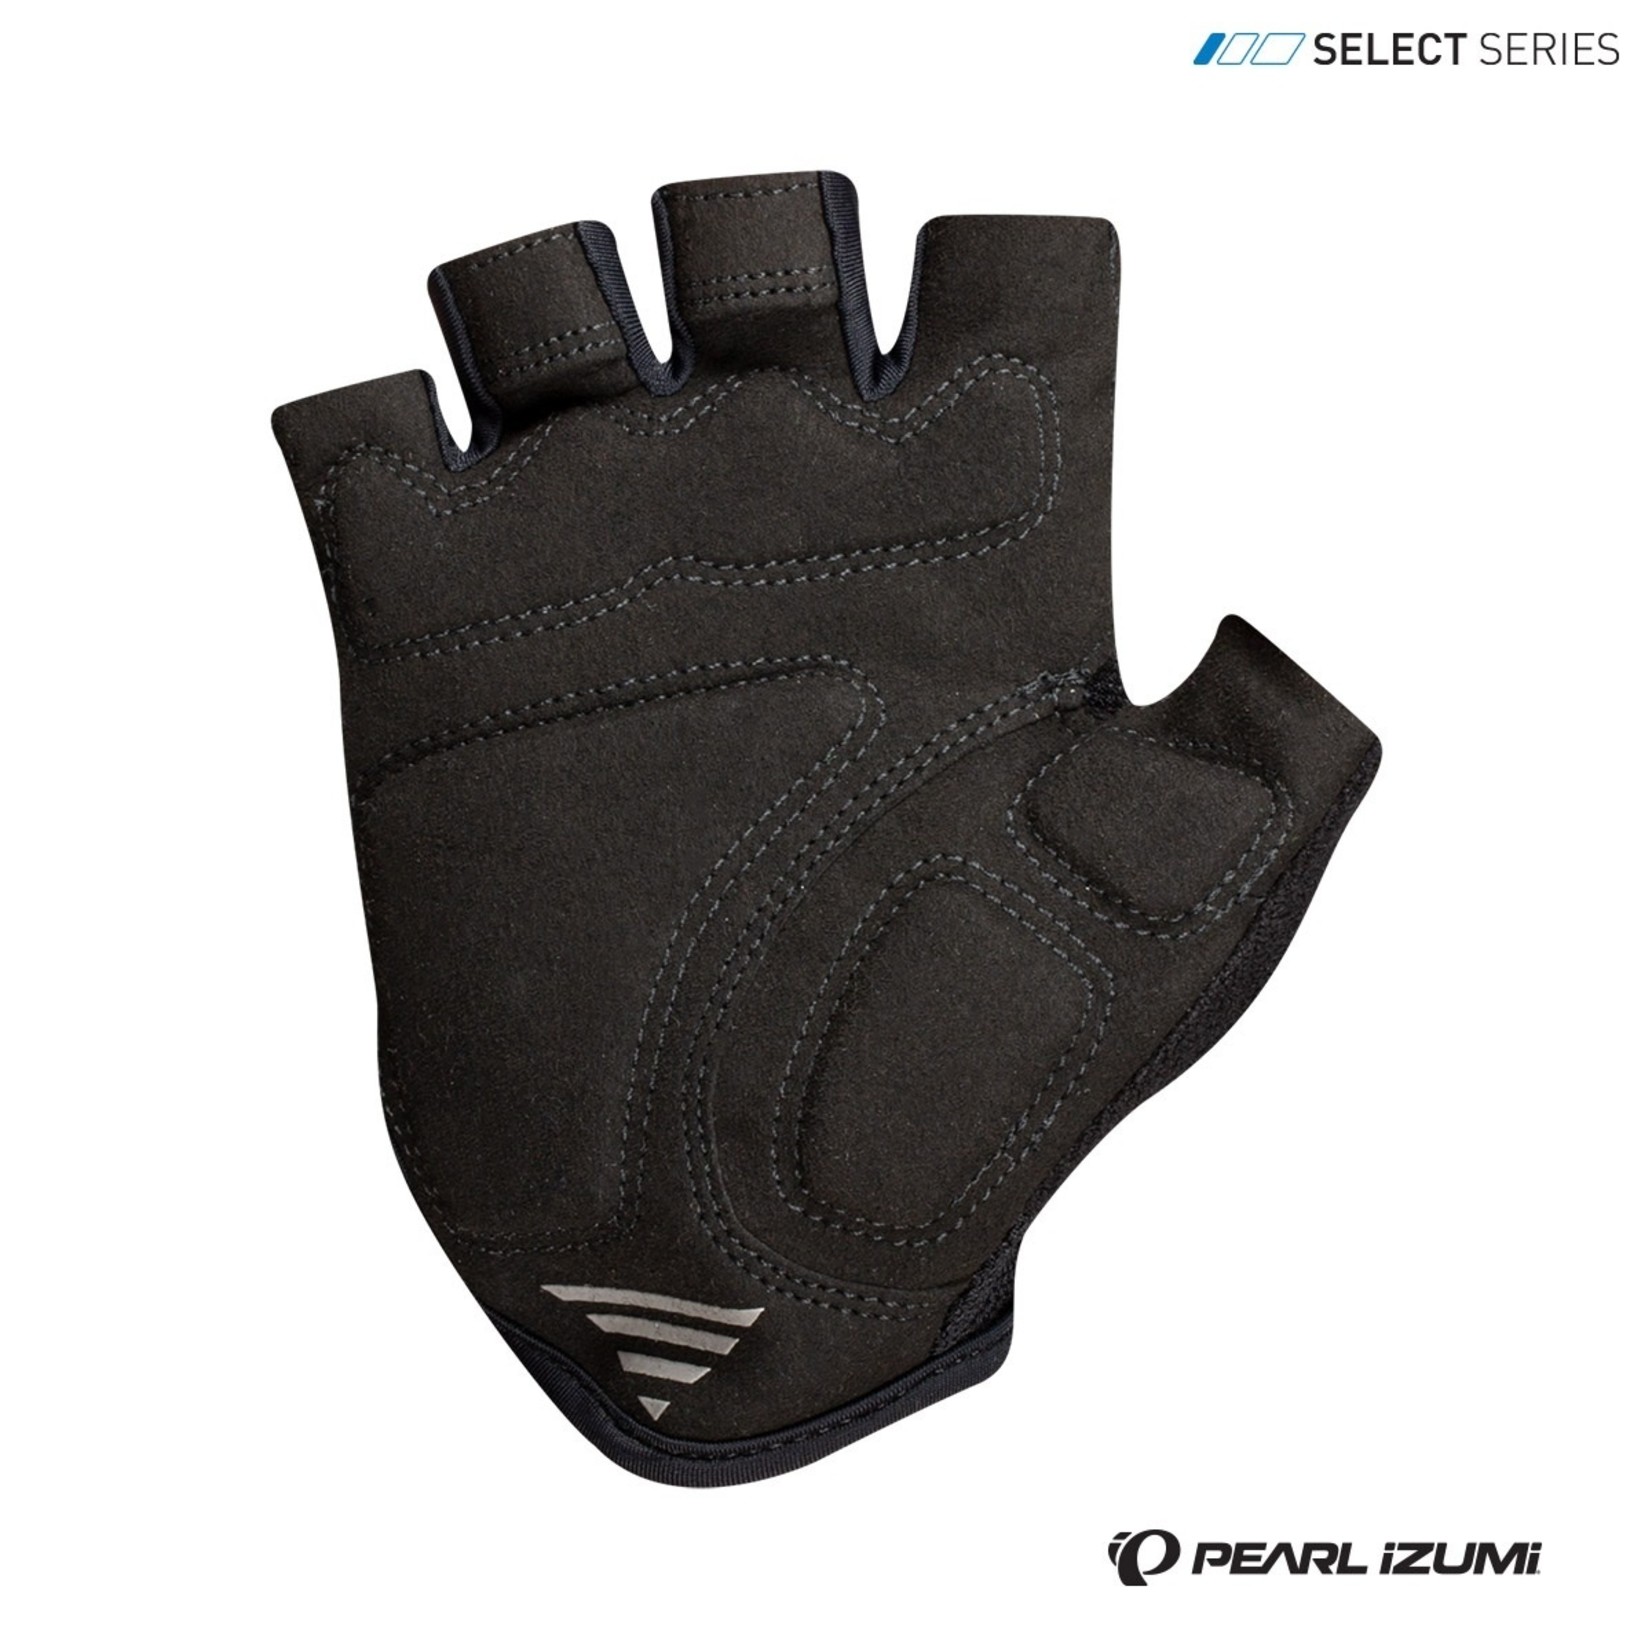 Pearl Izumi Pearl Izumi Gloves Women Select Fingerless Bike Gloves